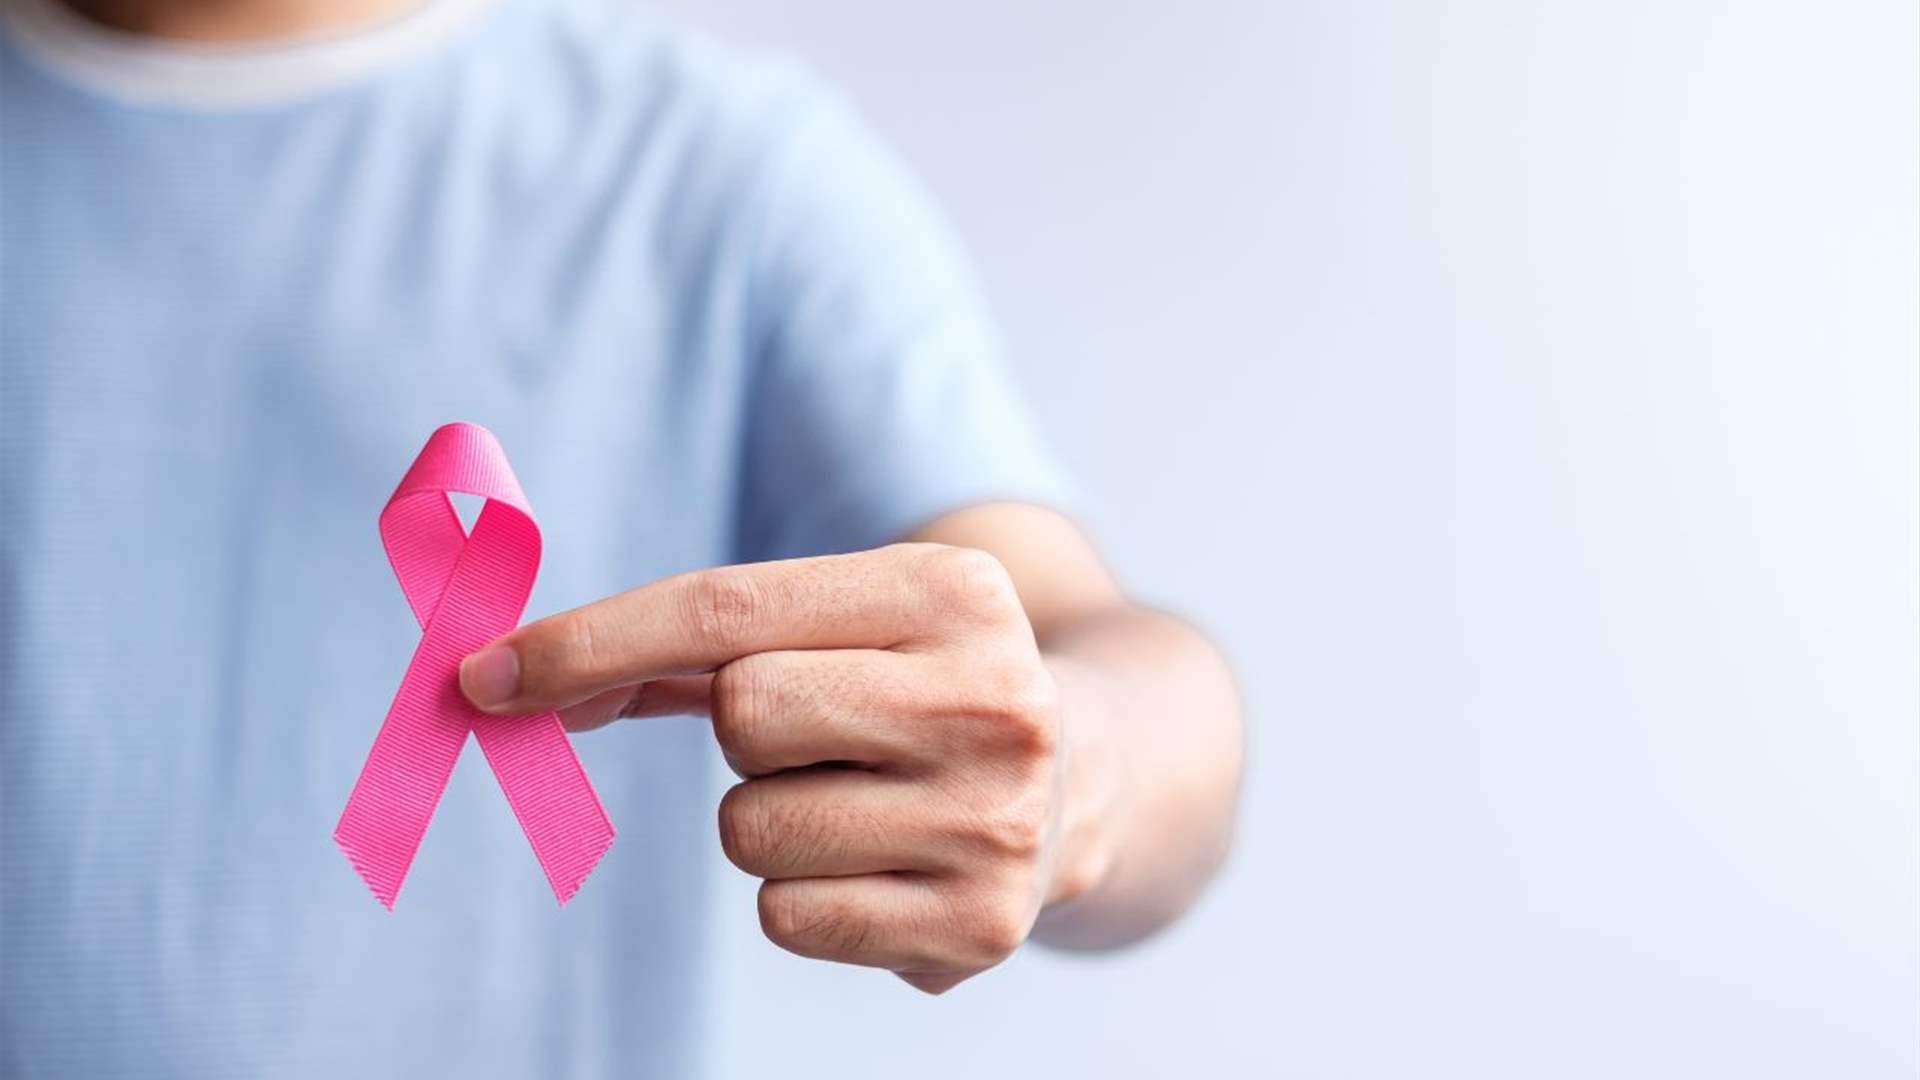 الفرق بين سرطان الثدي لدى النساء والرجال...وعند من تكون نسبة الشفاء أعلى؟